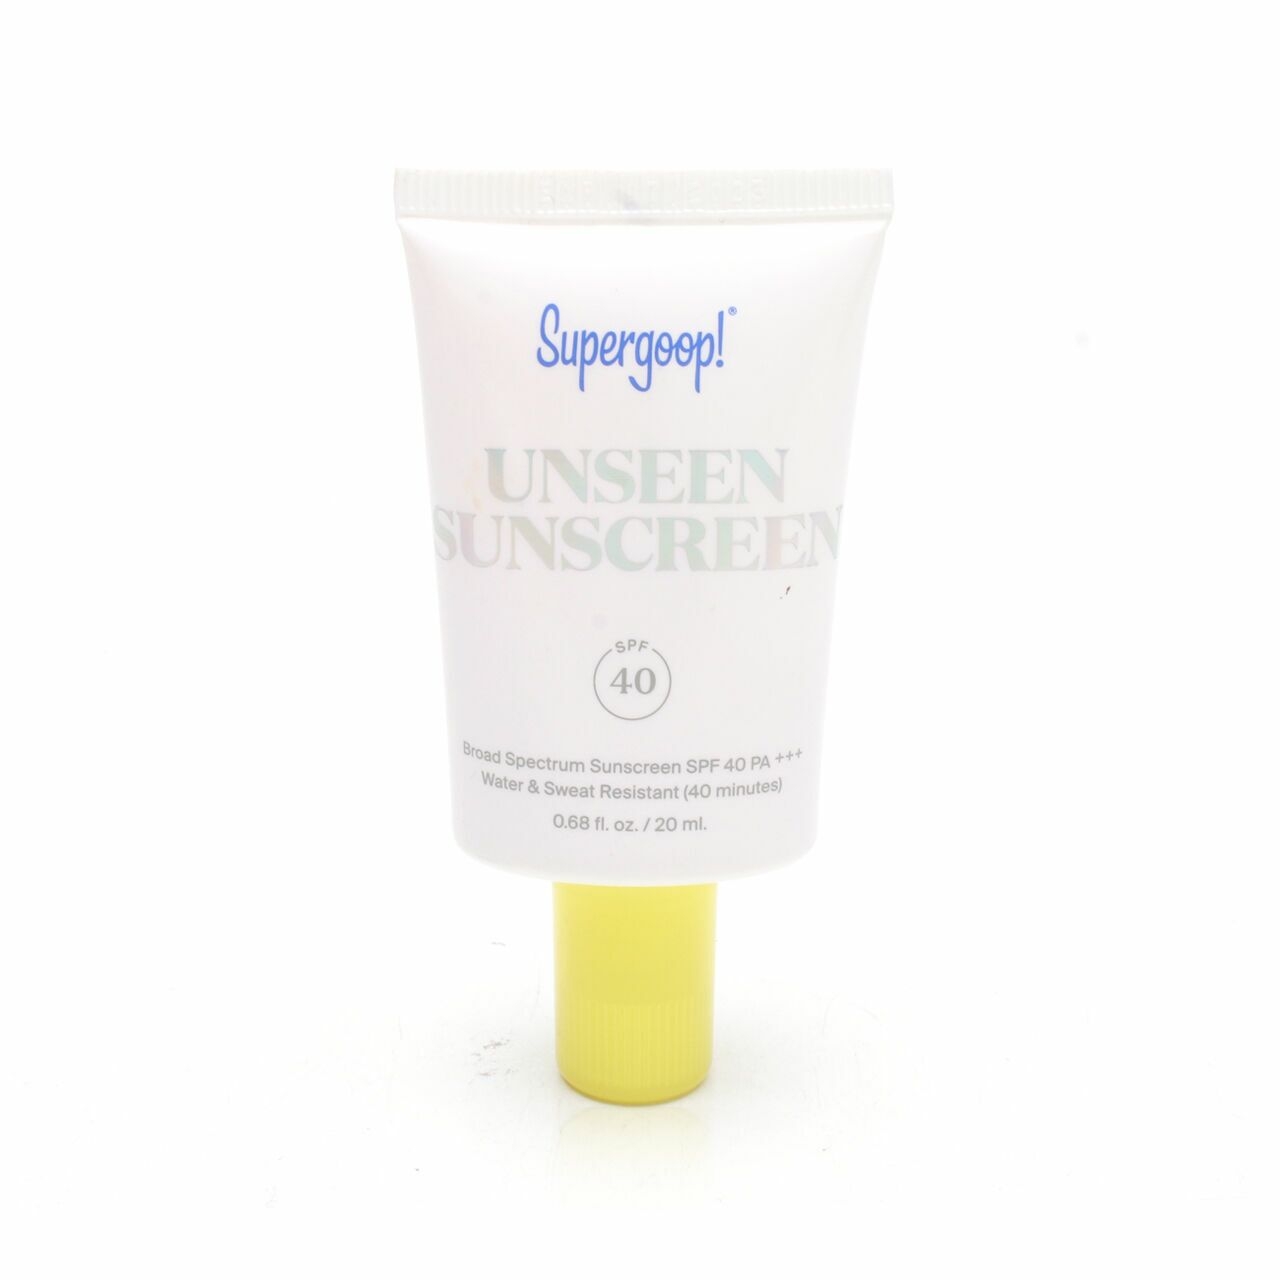 Supergoop Unseen Sunscreen Broad Spectrum Sunscreen SPF 40 PA+++ Skin Care